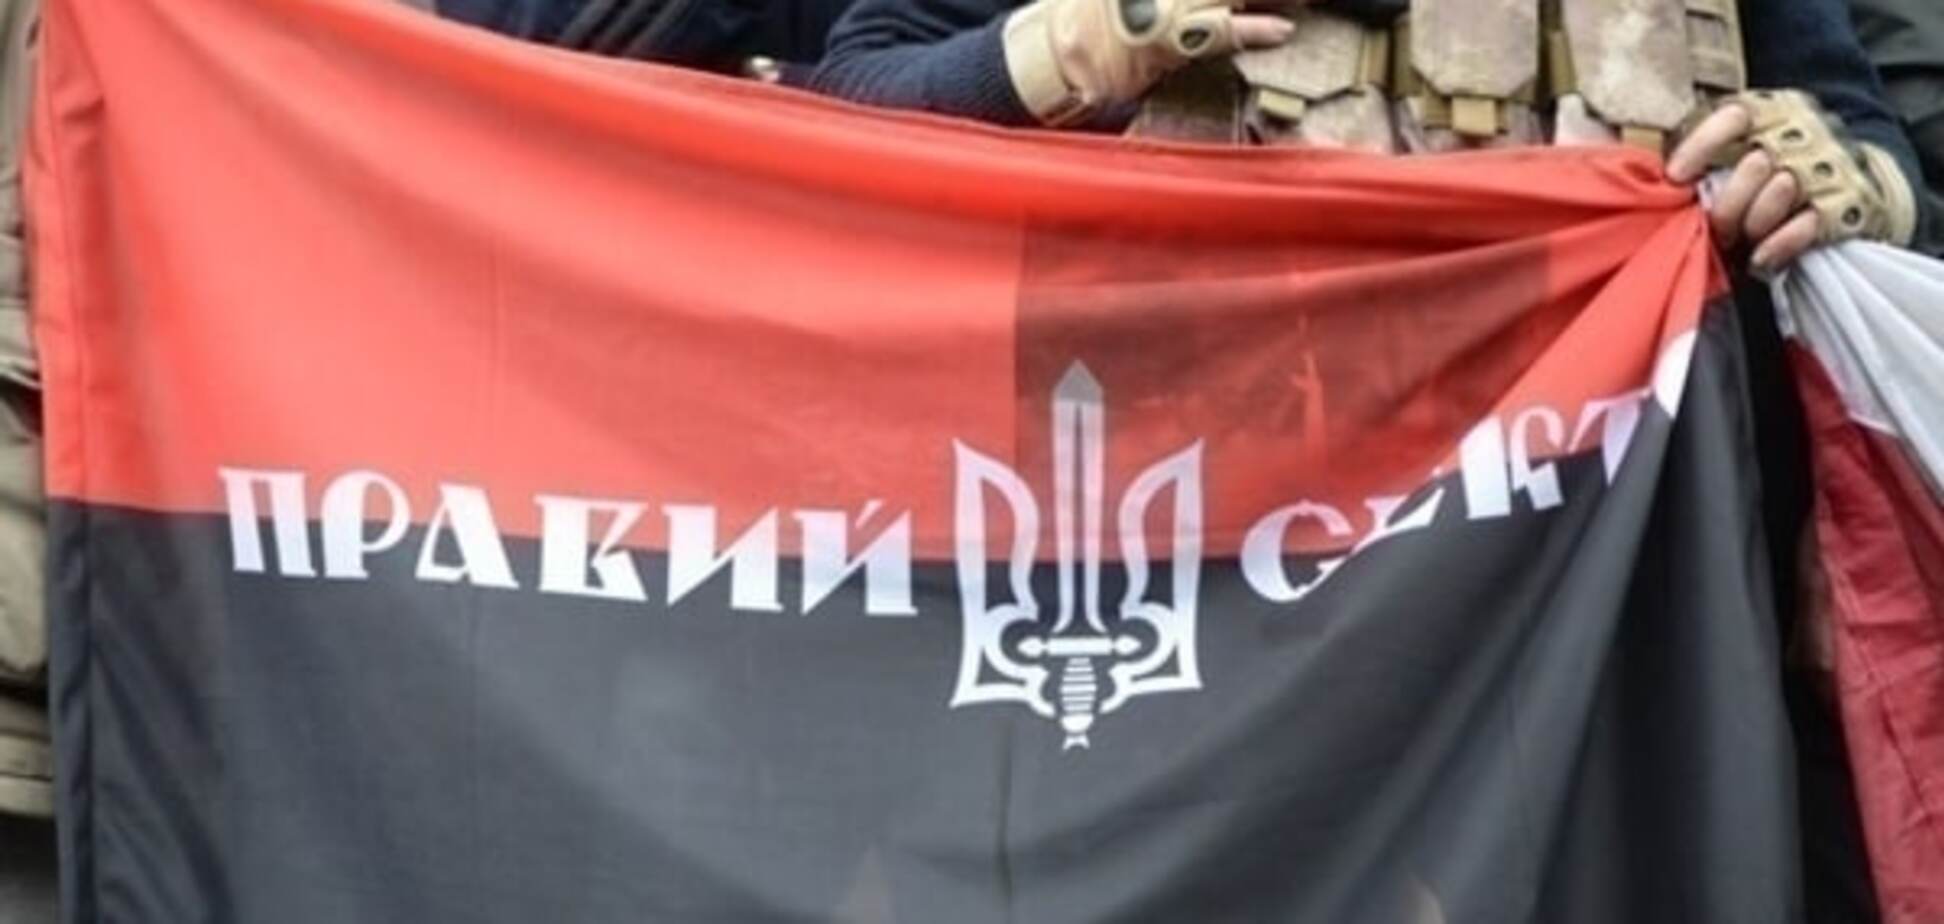 'Правый сектор' отреагировал на взрыв офиса в Киеве собственным расследованием